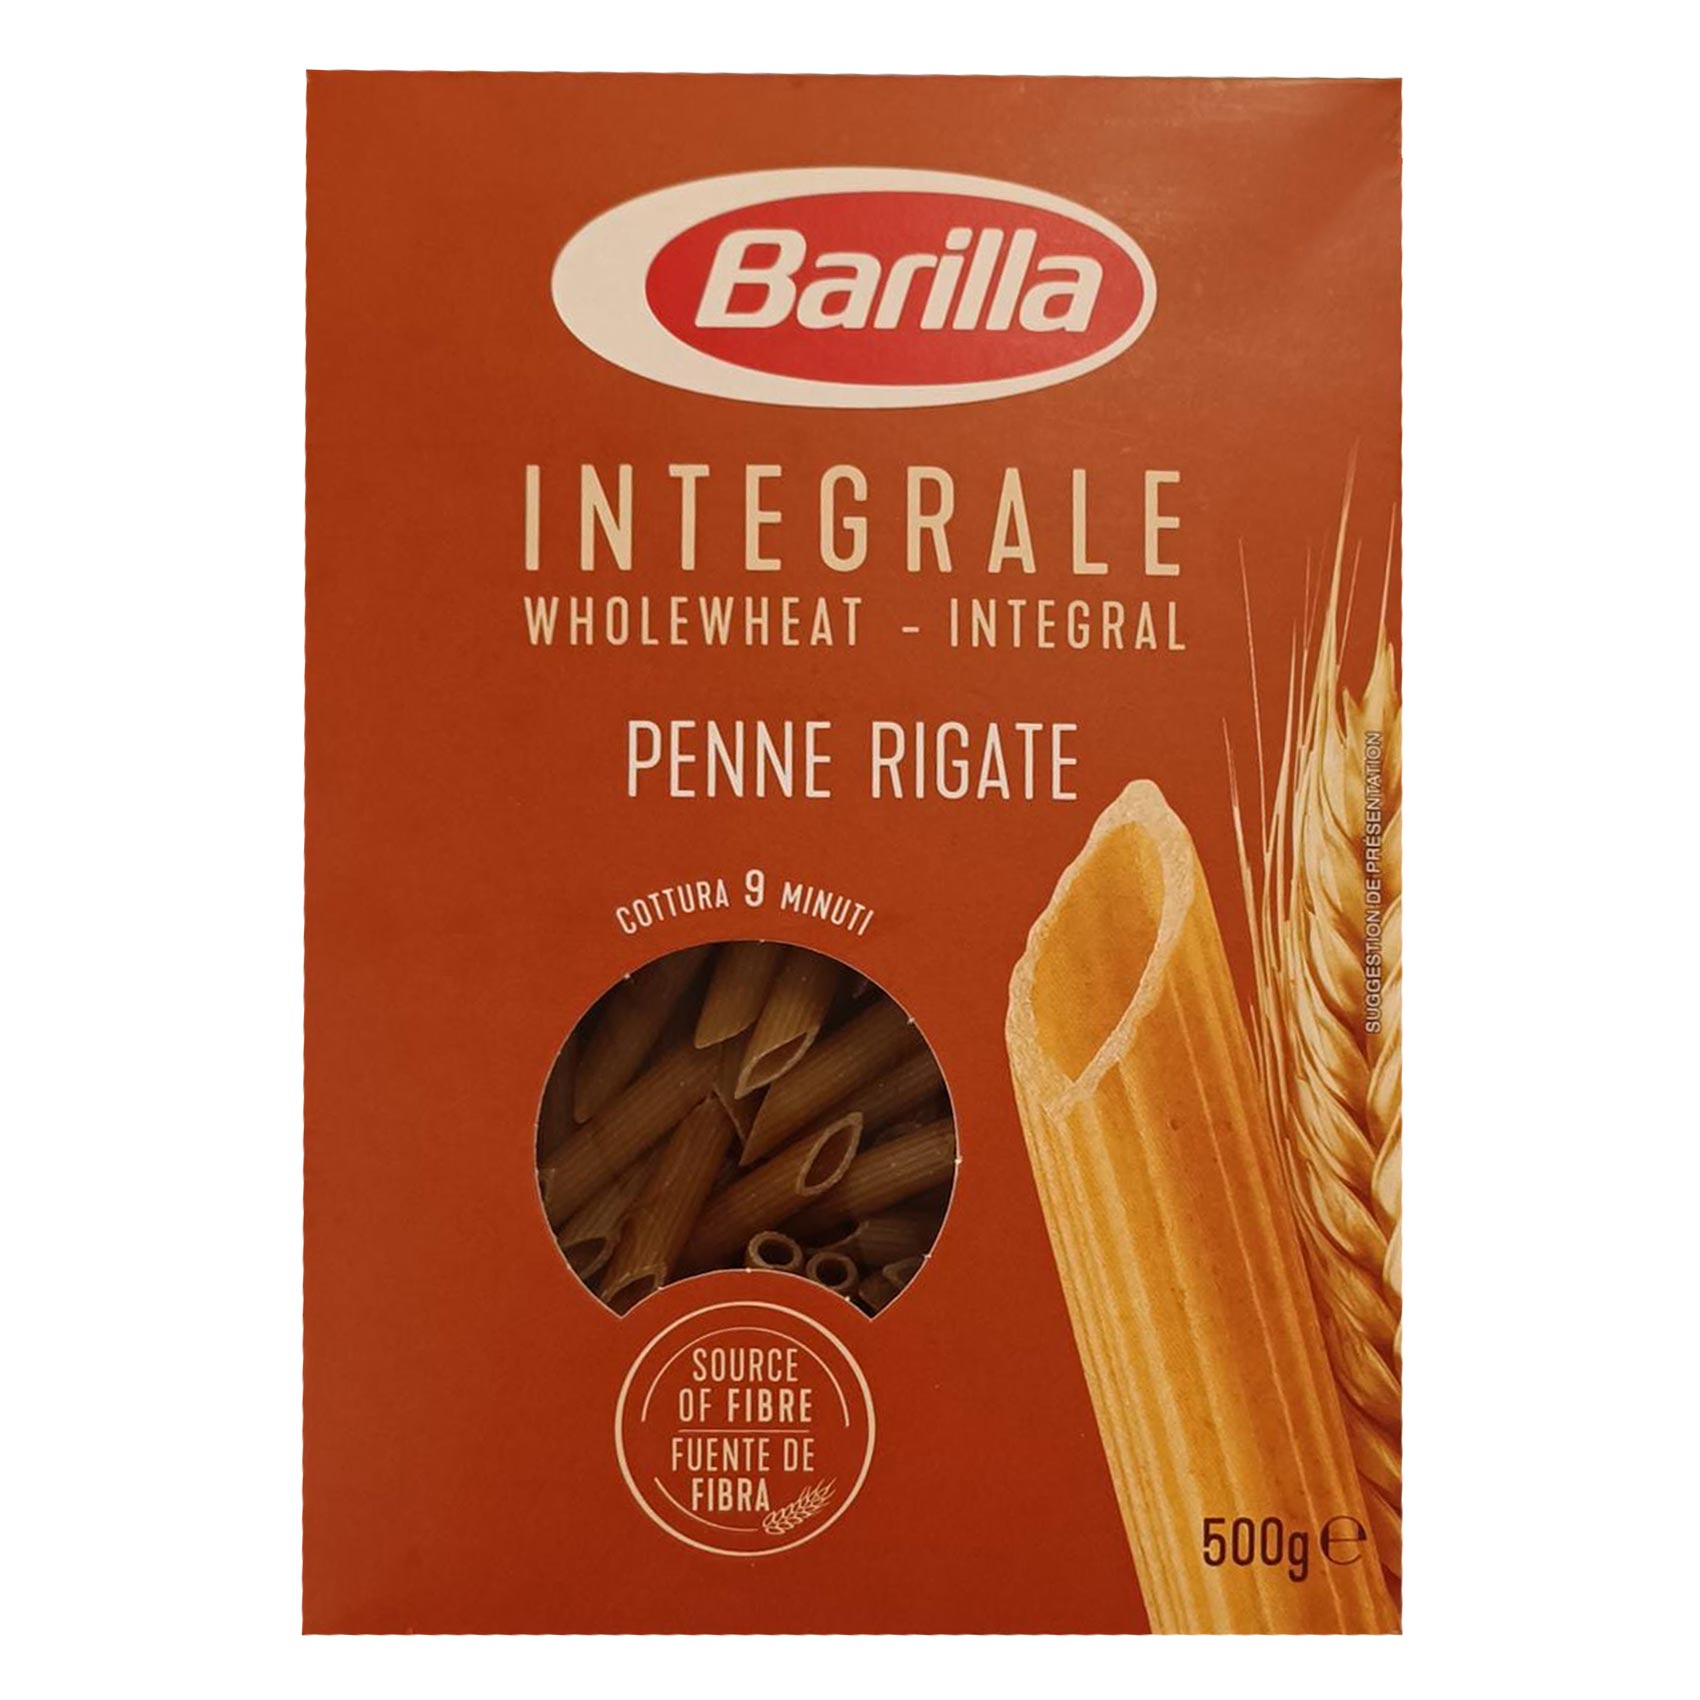 Barilla Pennette Rigate No 73 500GR